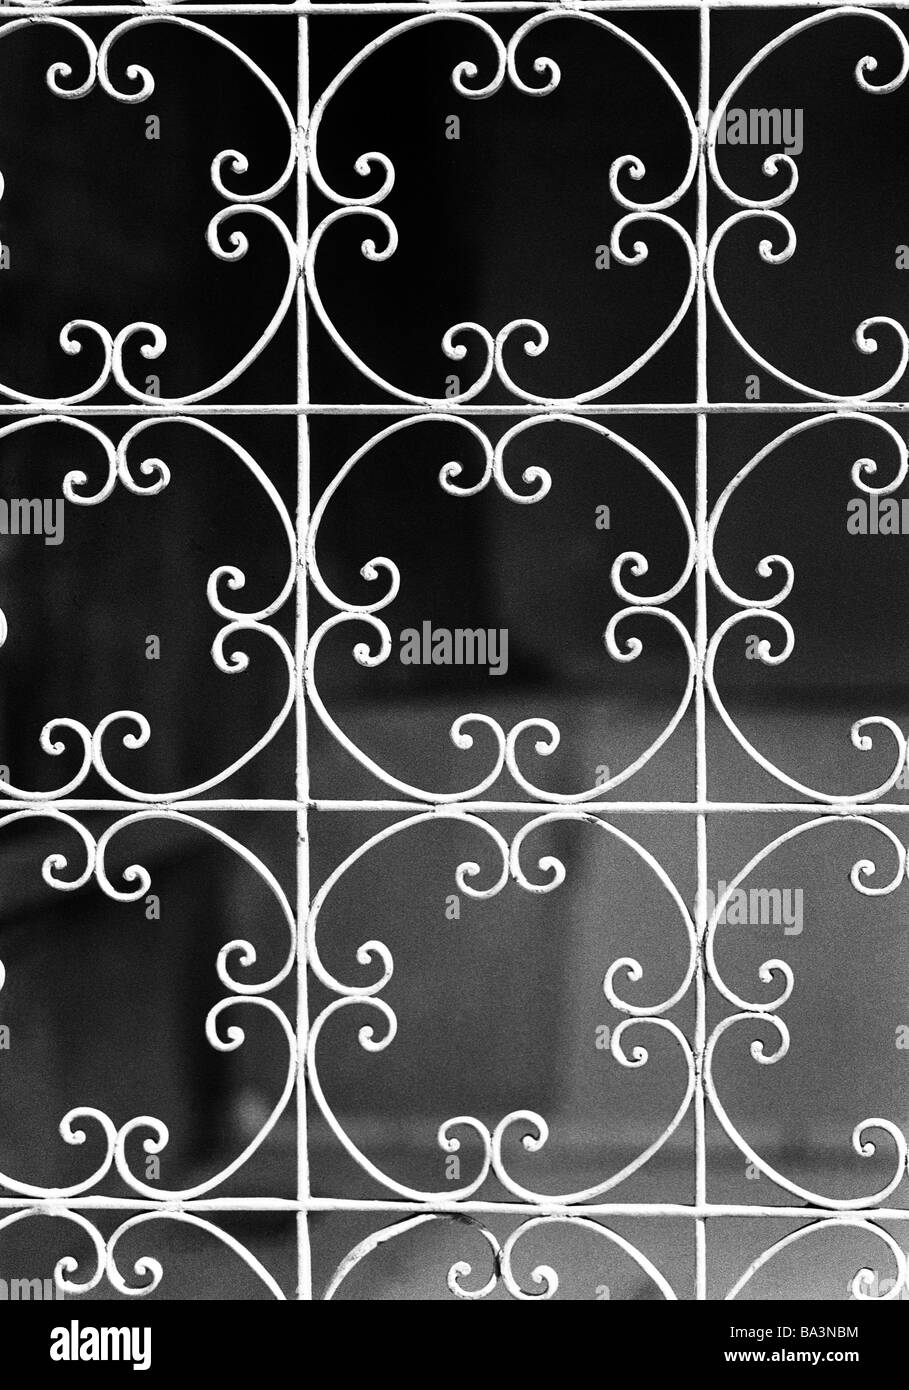 Années 70, photo en noir et blanc, symbolique, gate, gate, treillis, ornements en fer forgé Banque D'Images